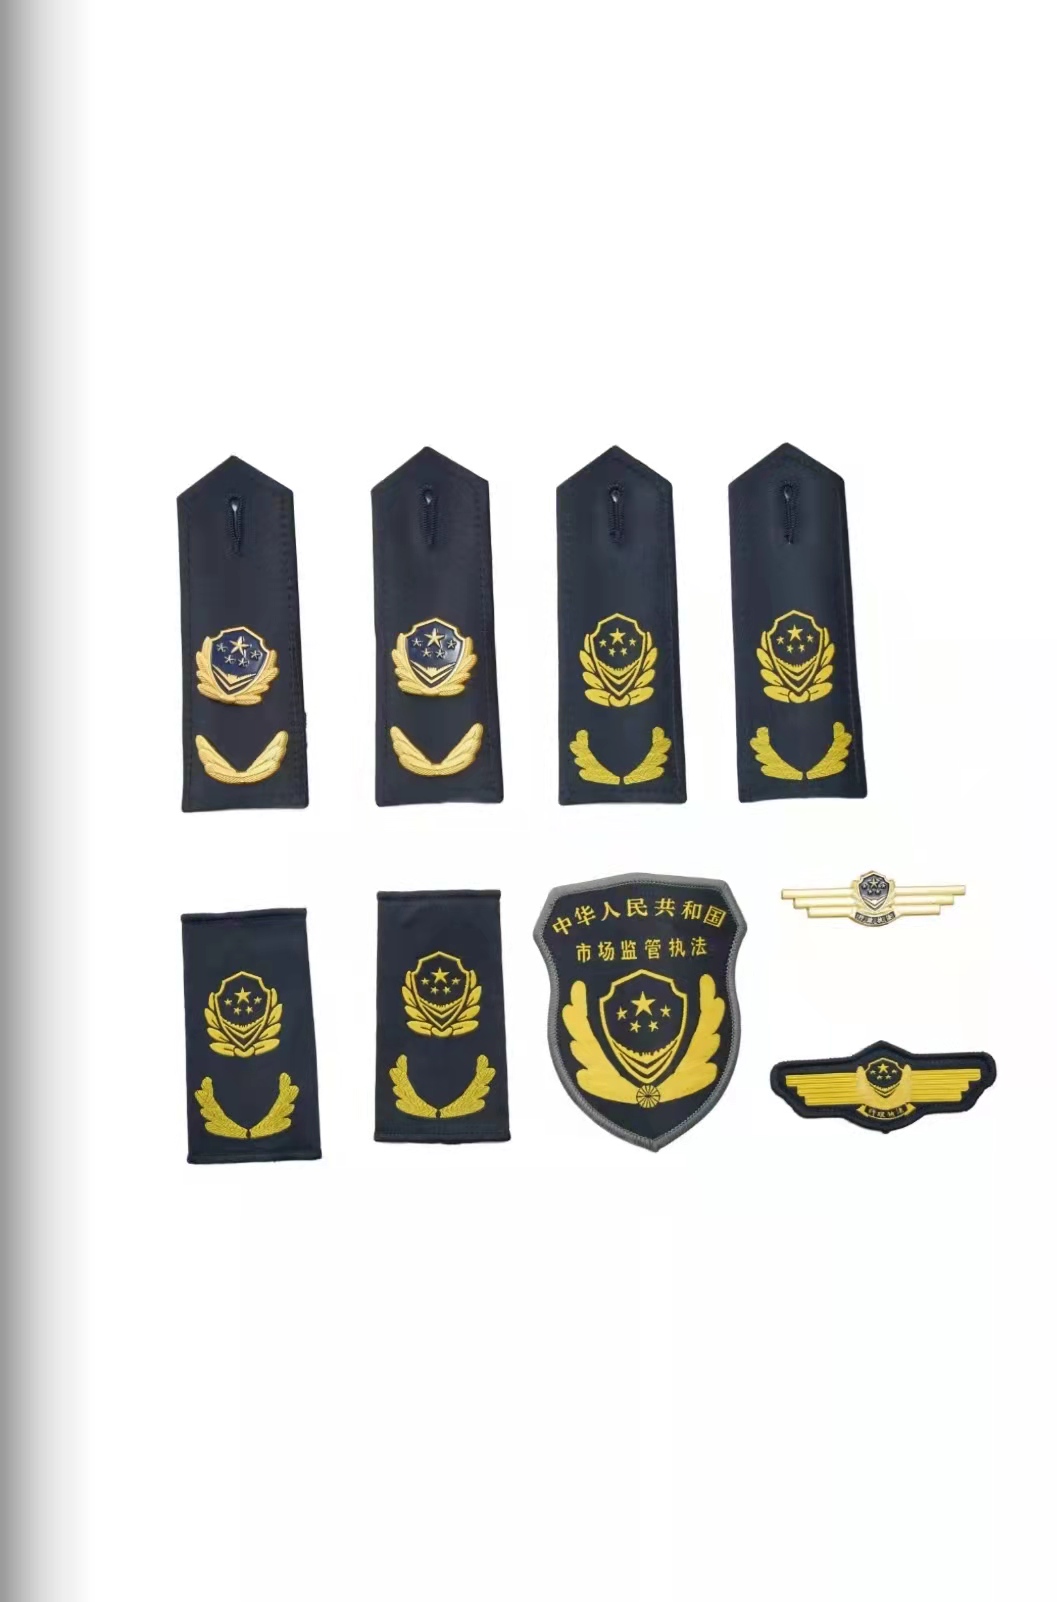 鄂尔多斯六部门统一市场监管执法制服标志